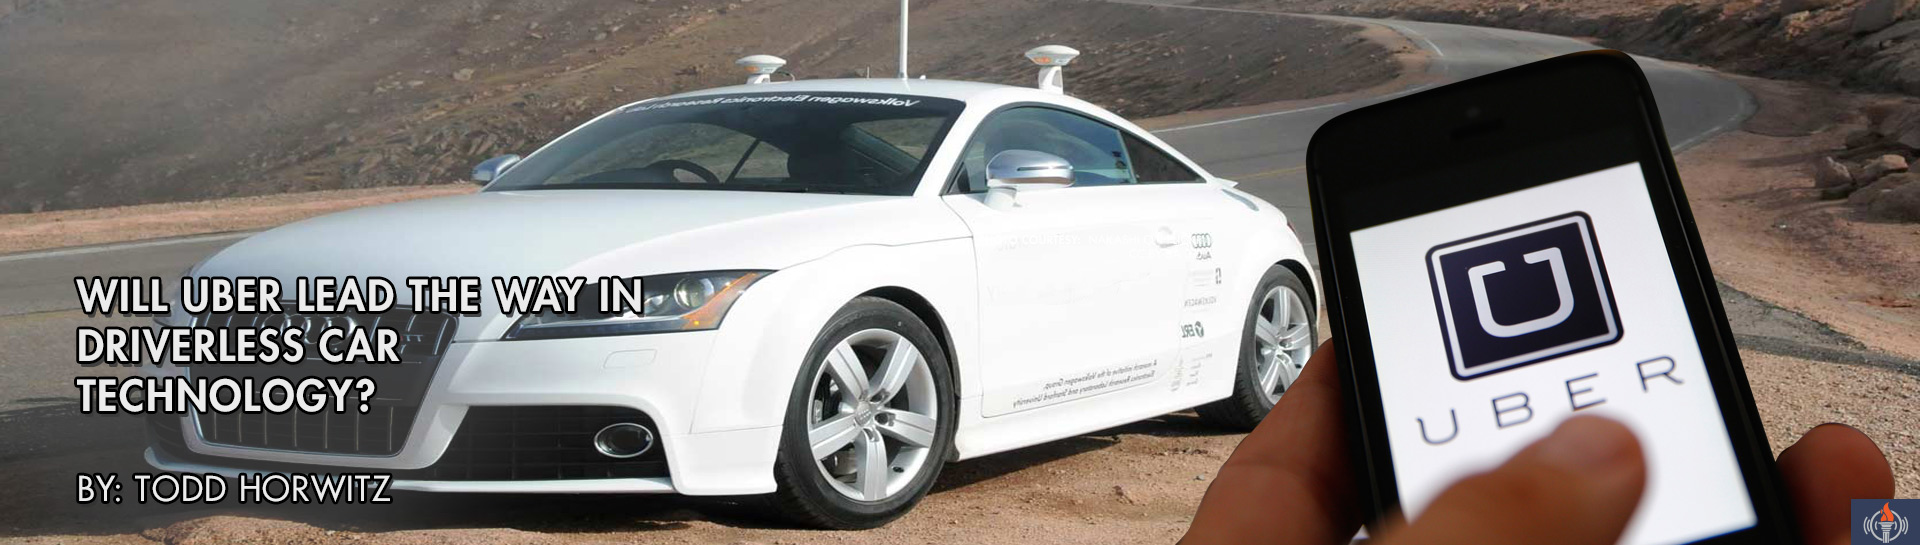 UBER Driverless Car Technology SLIDE